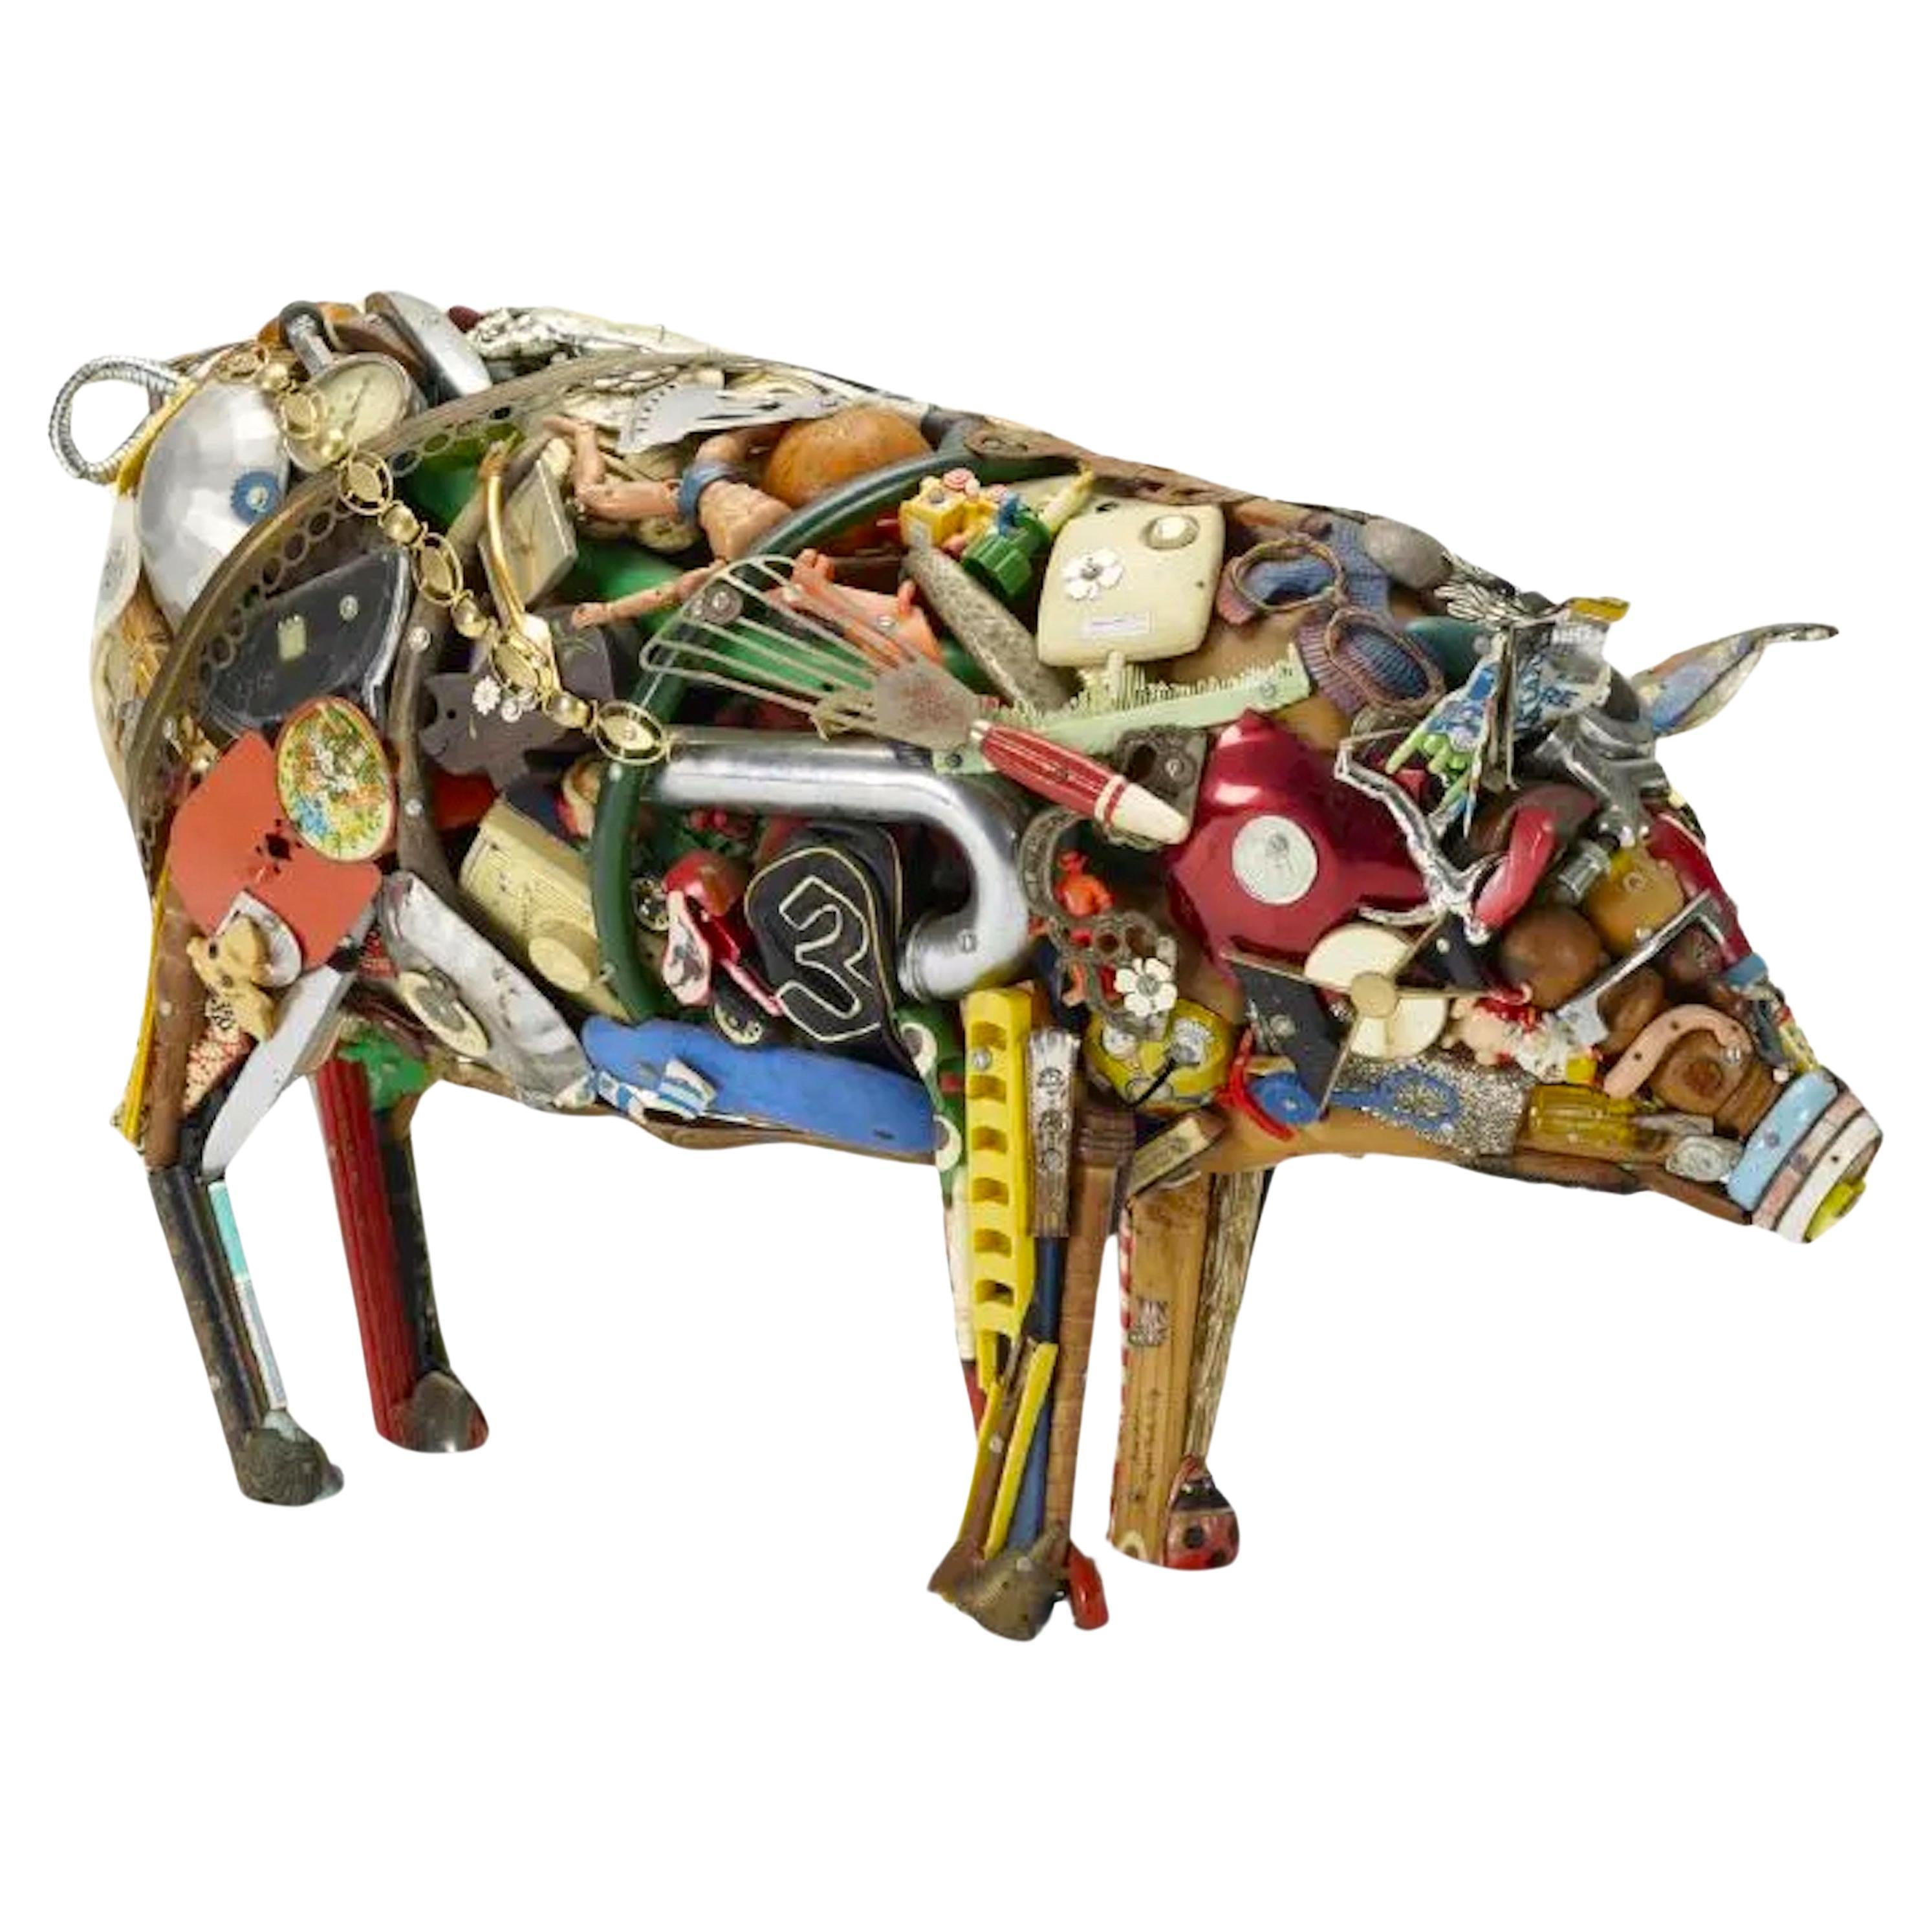 Gefundene Objekt-Skulptur „Pig“ von Leo Sewell